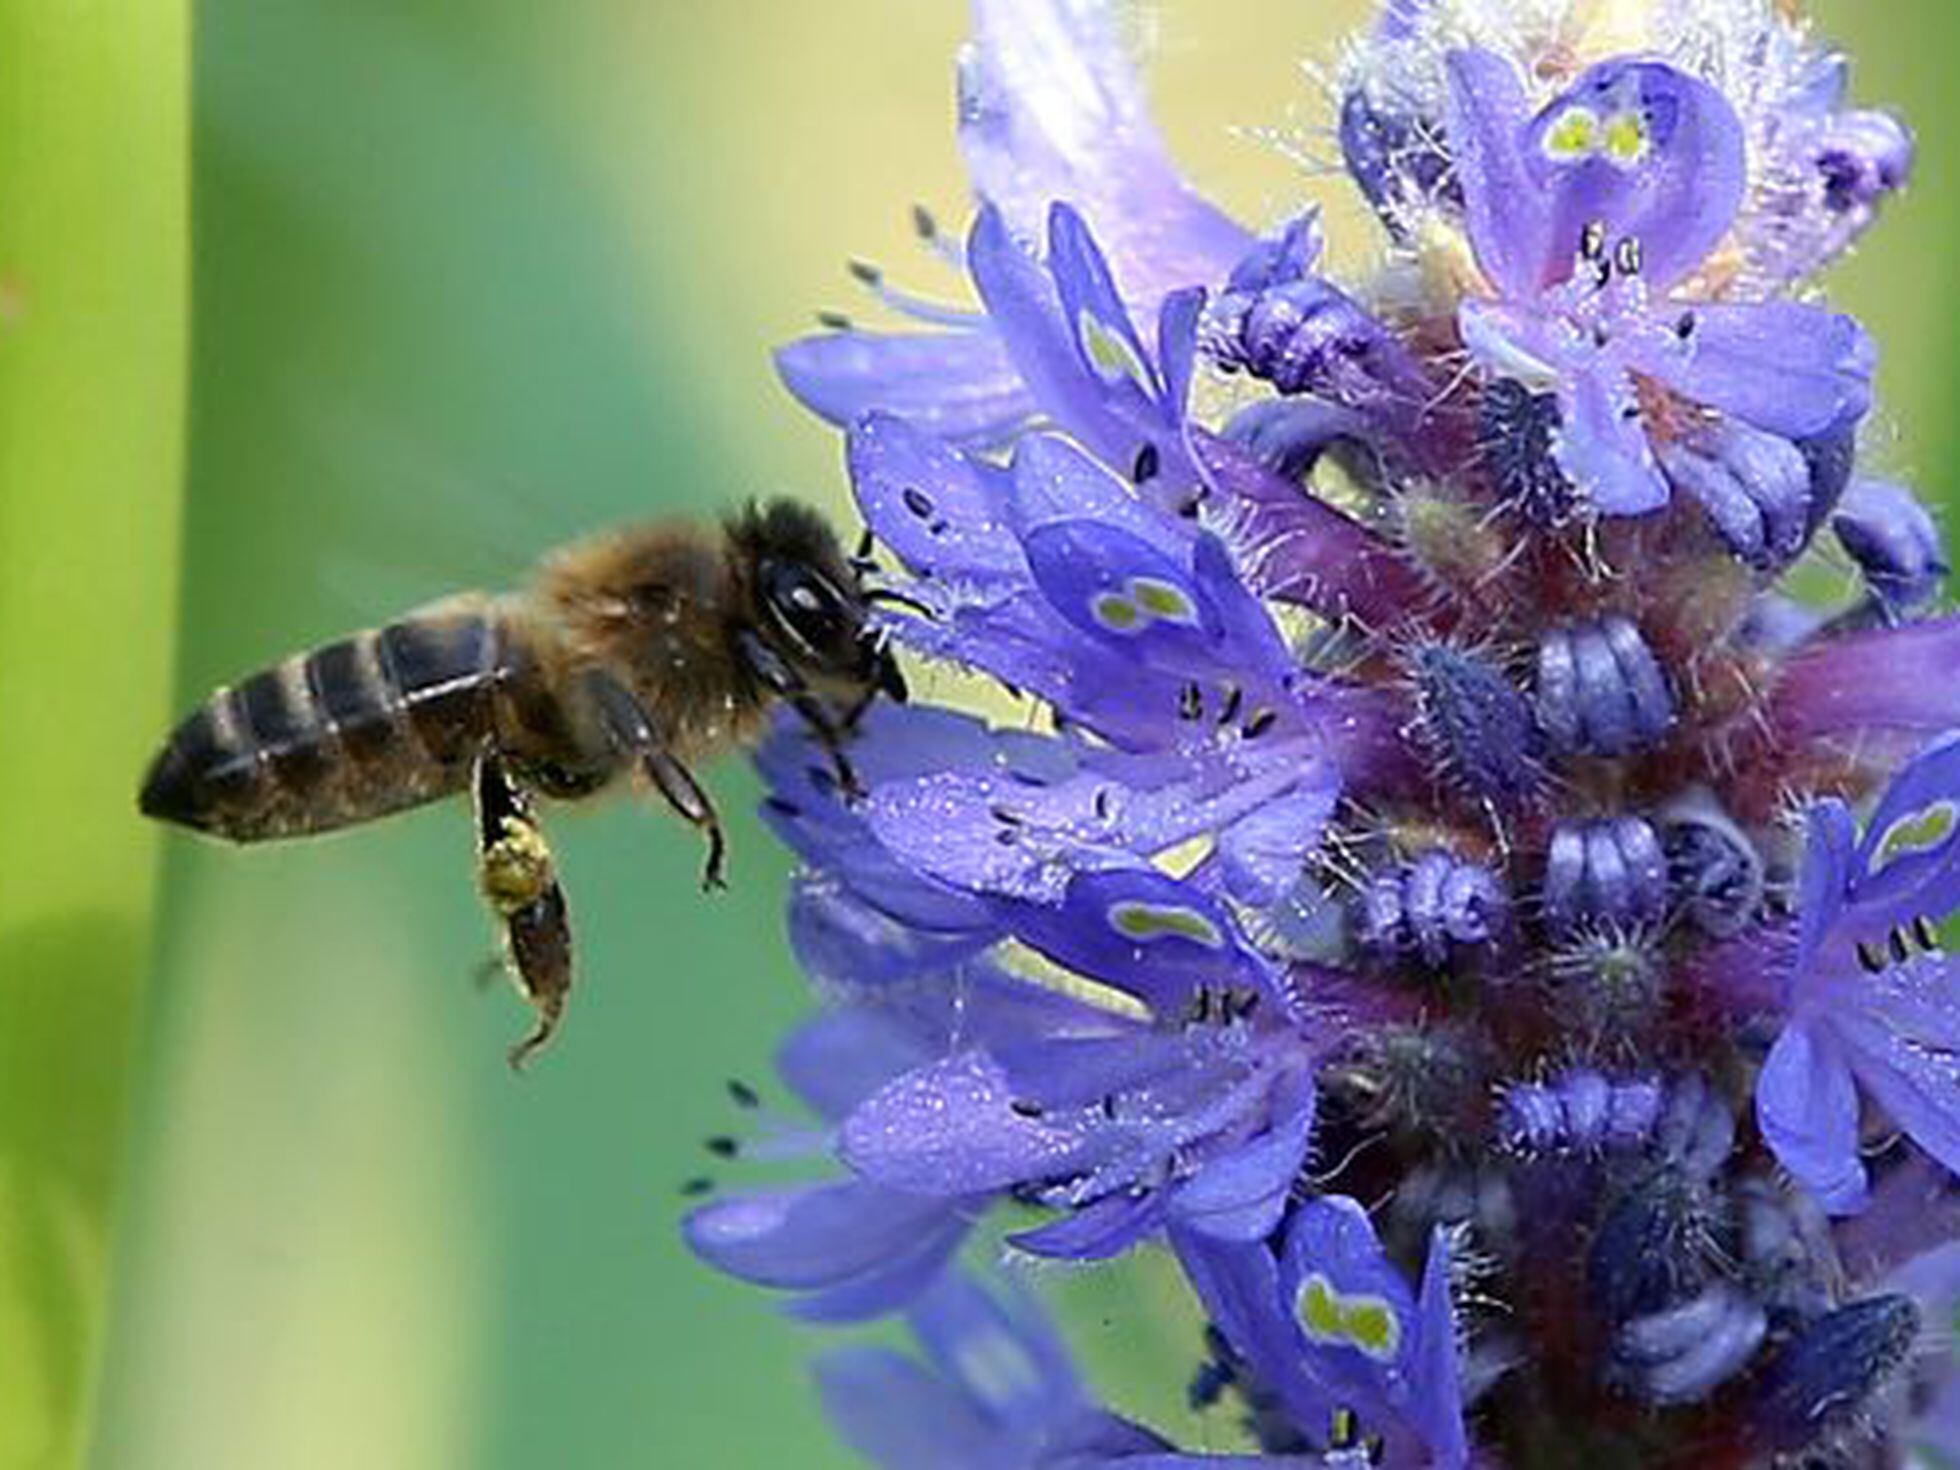 La reducción de variedades flores está matando a las abejas | Ciencia | EL PAÍS